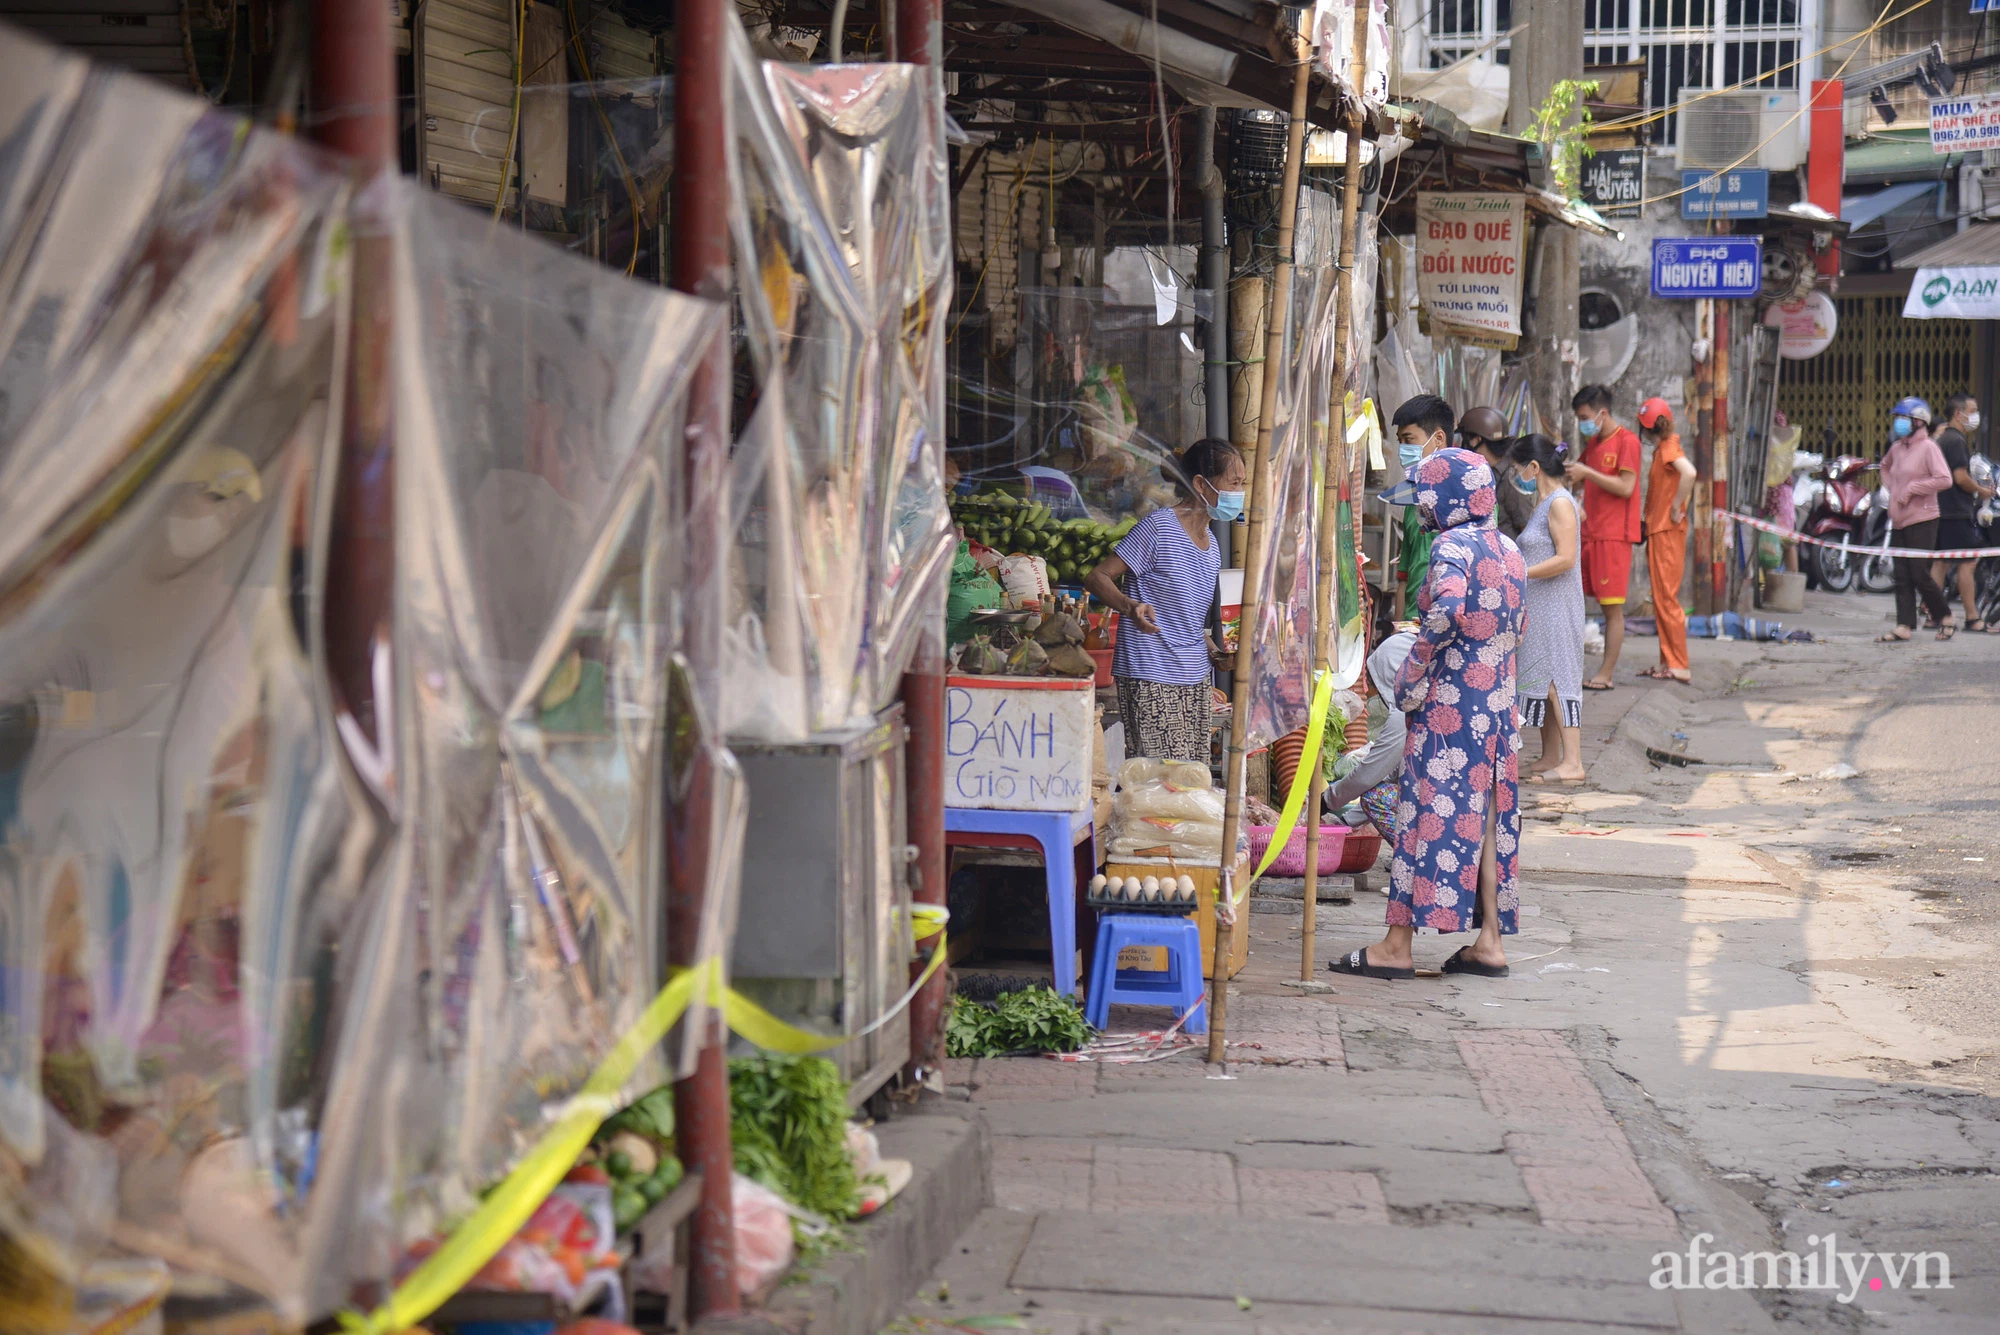 Ấn tượng với khu chợ dân sinh đầu tiên ở Hà Nội quây tấm nilon phòng dịch COVID-19, tiểu thương chia ca đứng bán theo ngày chẵn, lẻ - Ảnh 11.